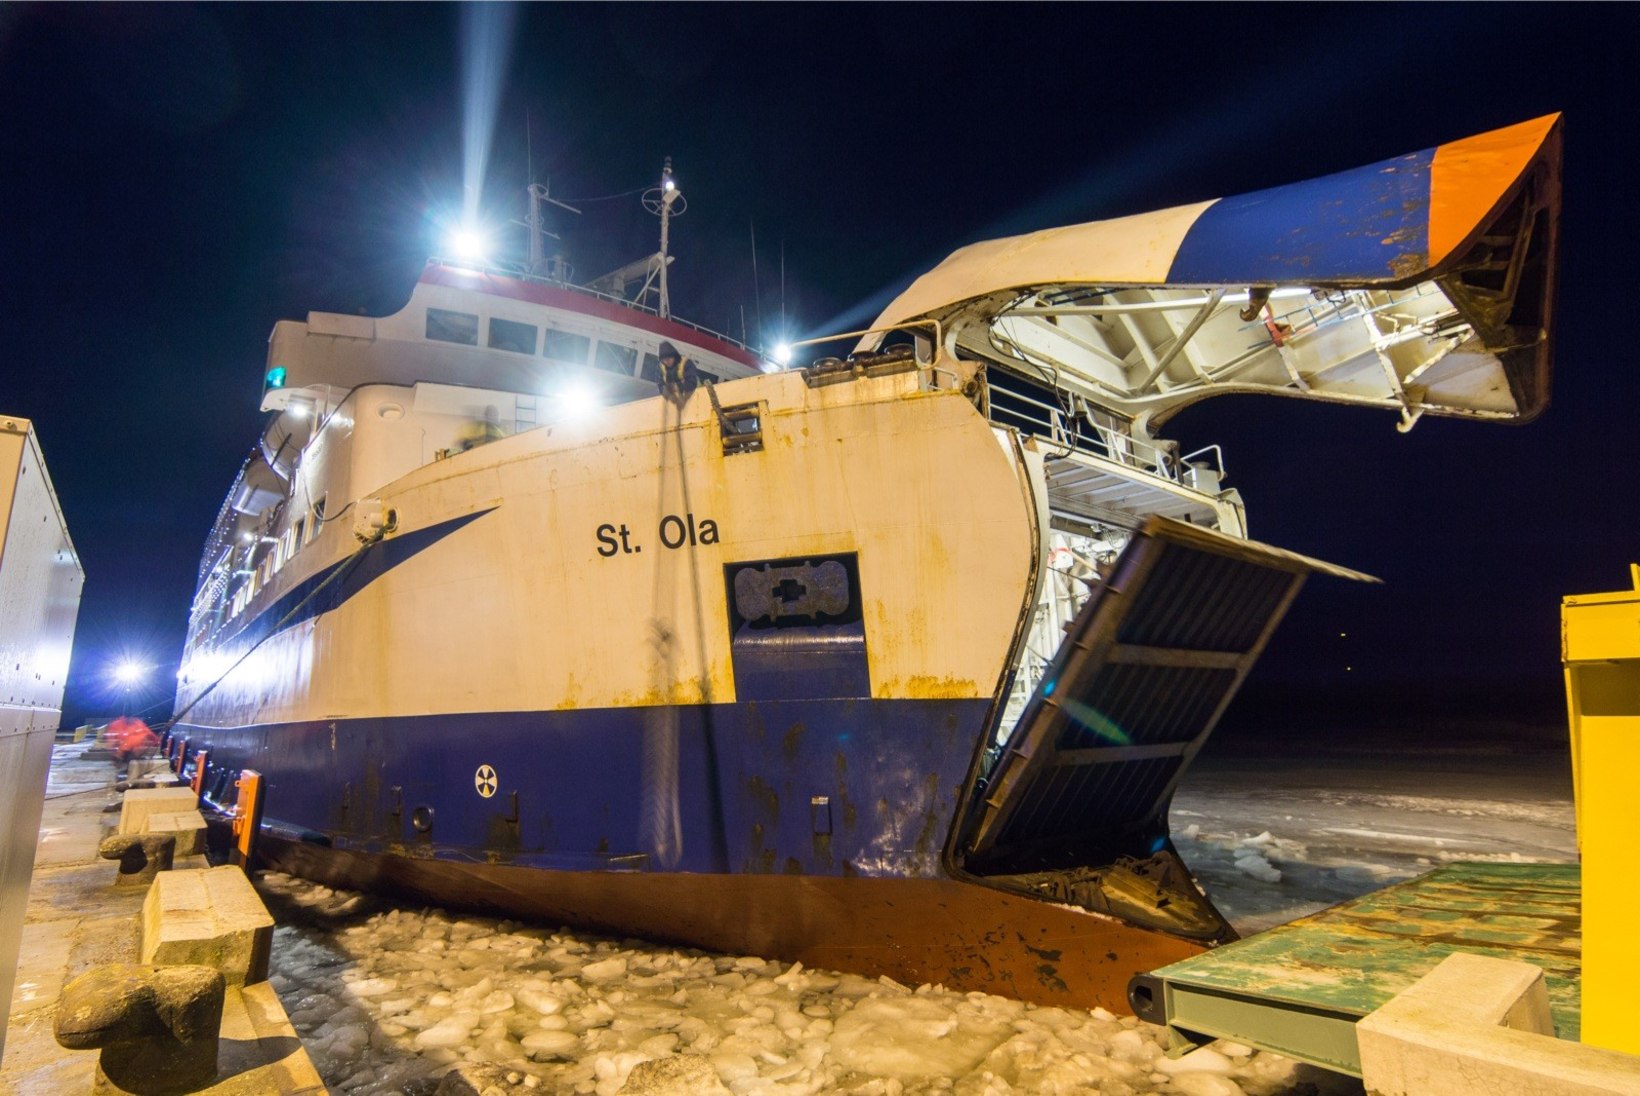 Riigifirma arestis võla tagatiseks ühe Leedo laevadest